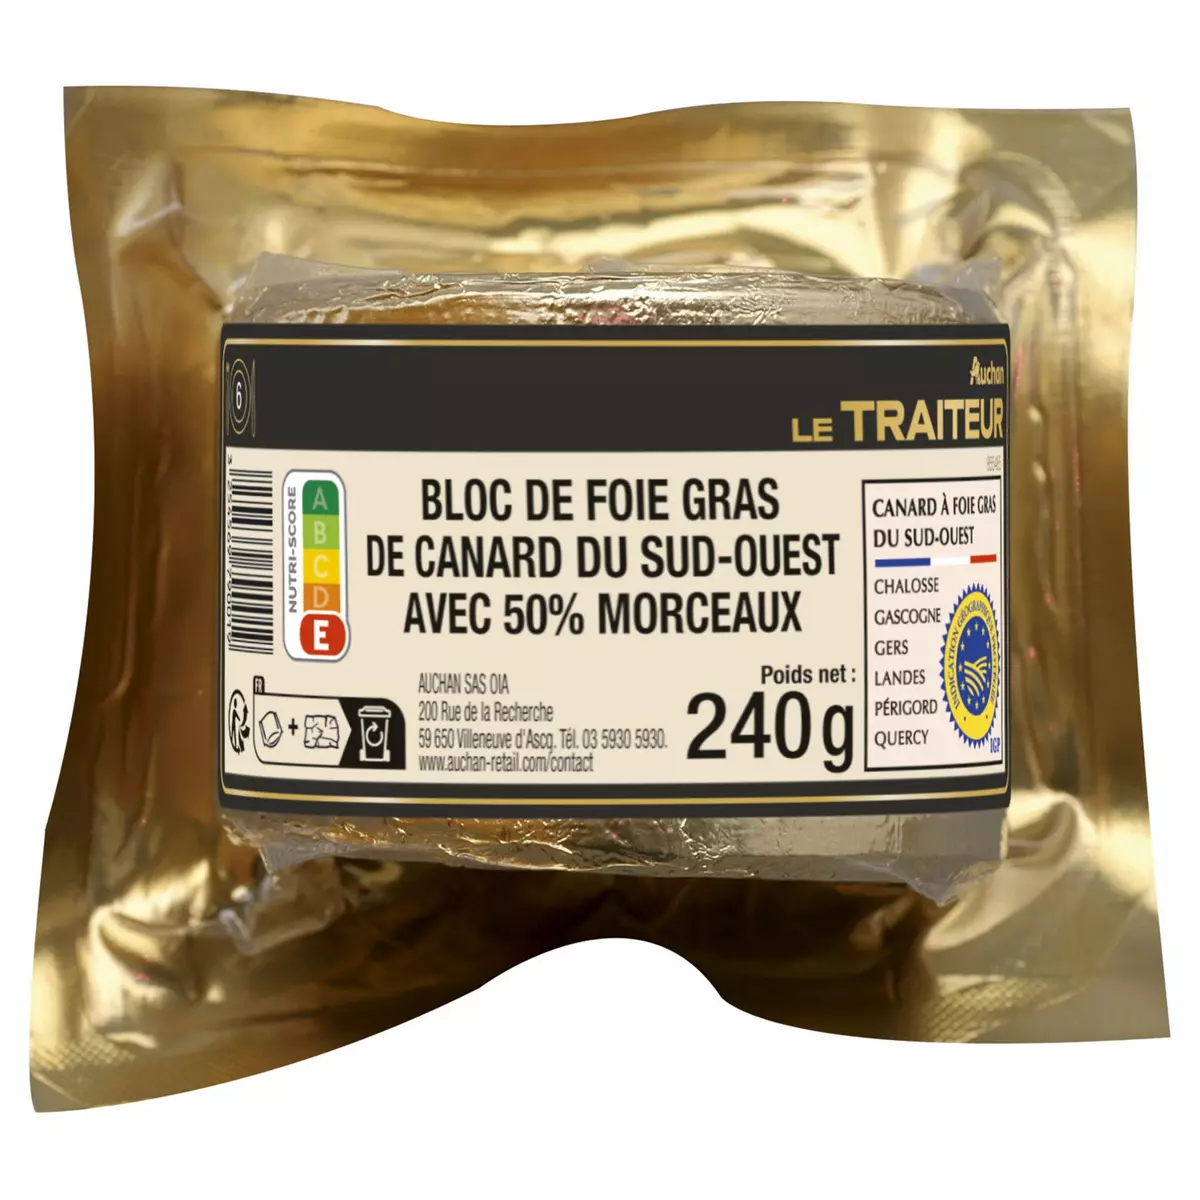 AUCHAN LE TRAITEUR Bloc de foie gras de canard du sud-ouest avec 50% de morceaux  240g